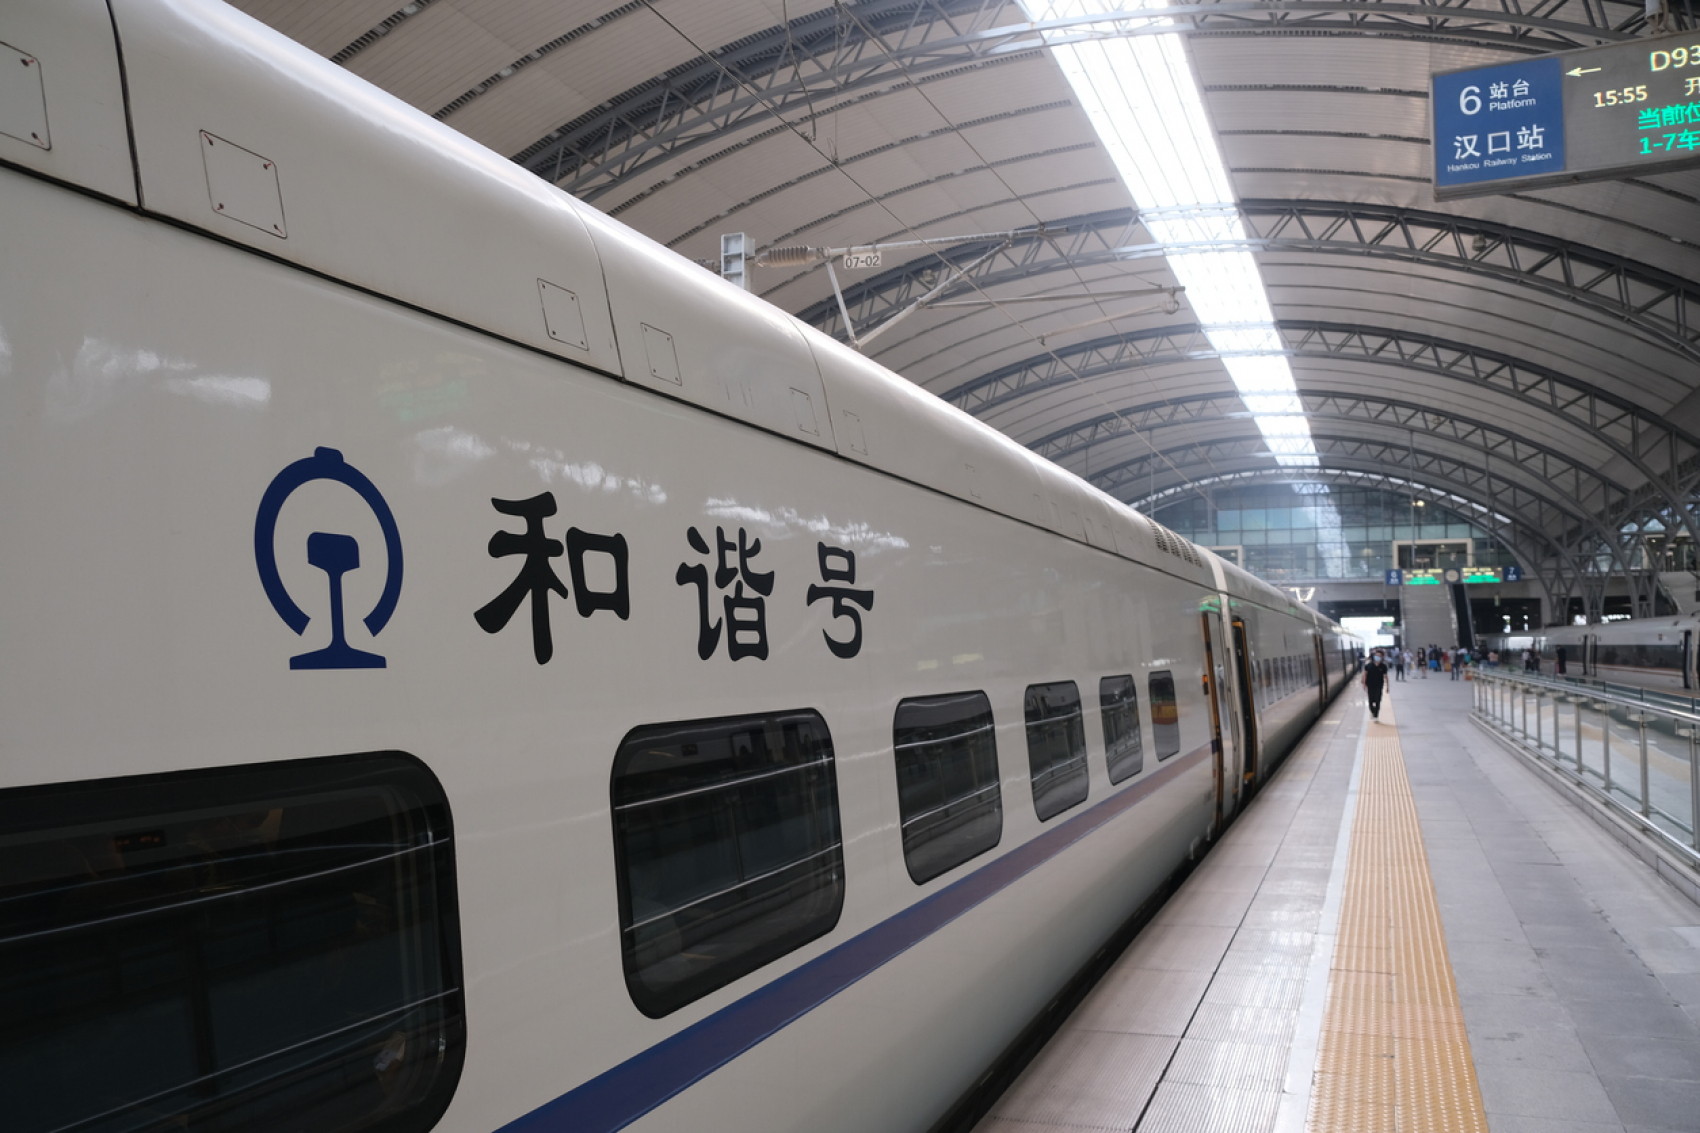 Le concept de hexie (harmonie, 和谐), cher 
au gouvernement chinois, s’affiche jusque sur les trains grande vitesse. Train de la série Hexie Hao, 2022. © Robert Way/iStock